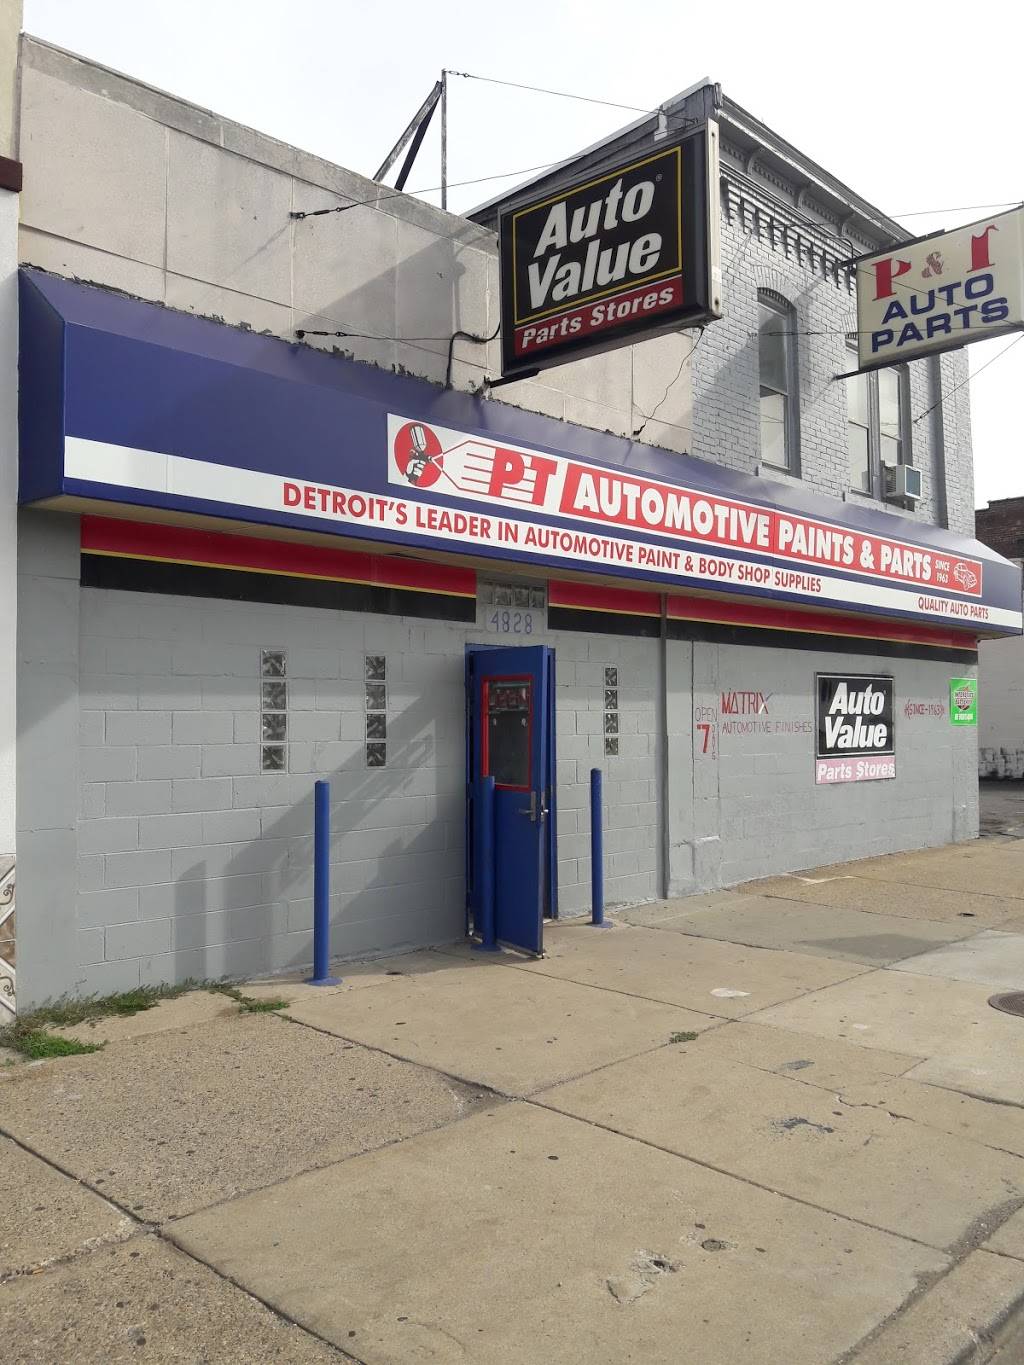 P & T Automotive Paints & Parts Co | 4828 Michigan Ave, Detroit, MI 48210, USA | Phone: (313) 894-1410